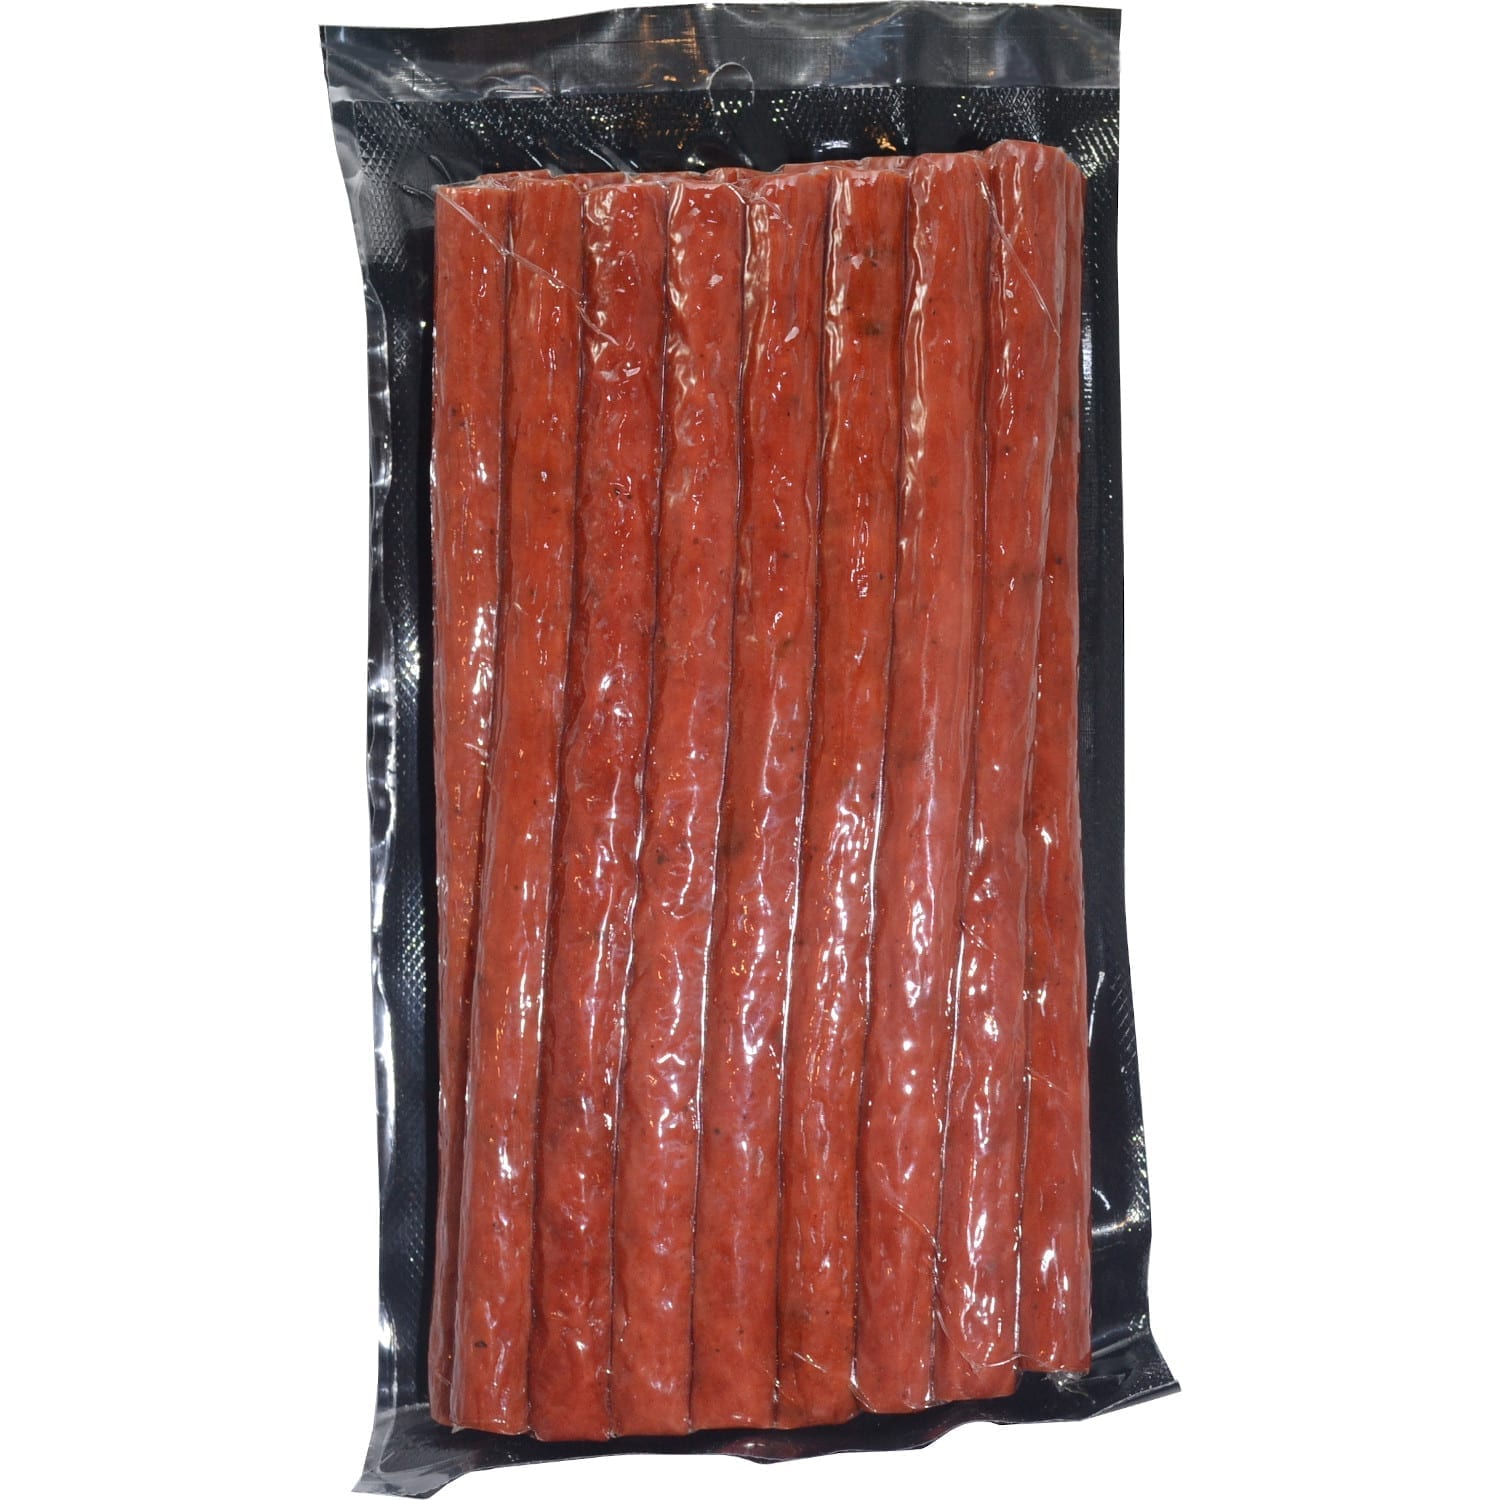 16 oz Meat Sticks – Spicy Jalapeño